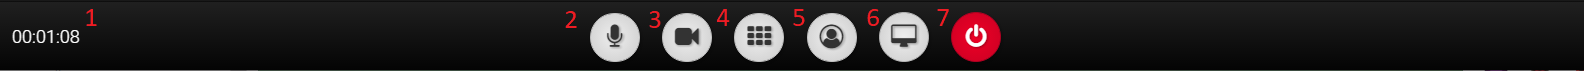 Desktop incall buttons.png